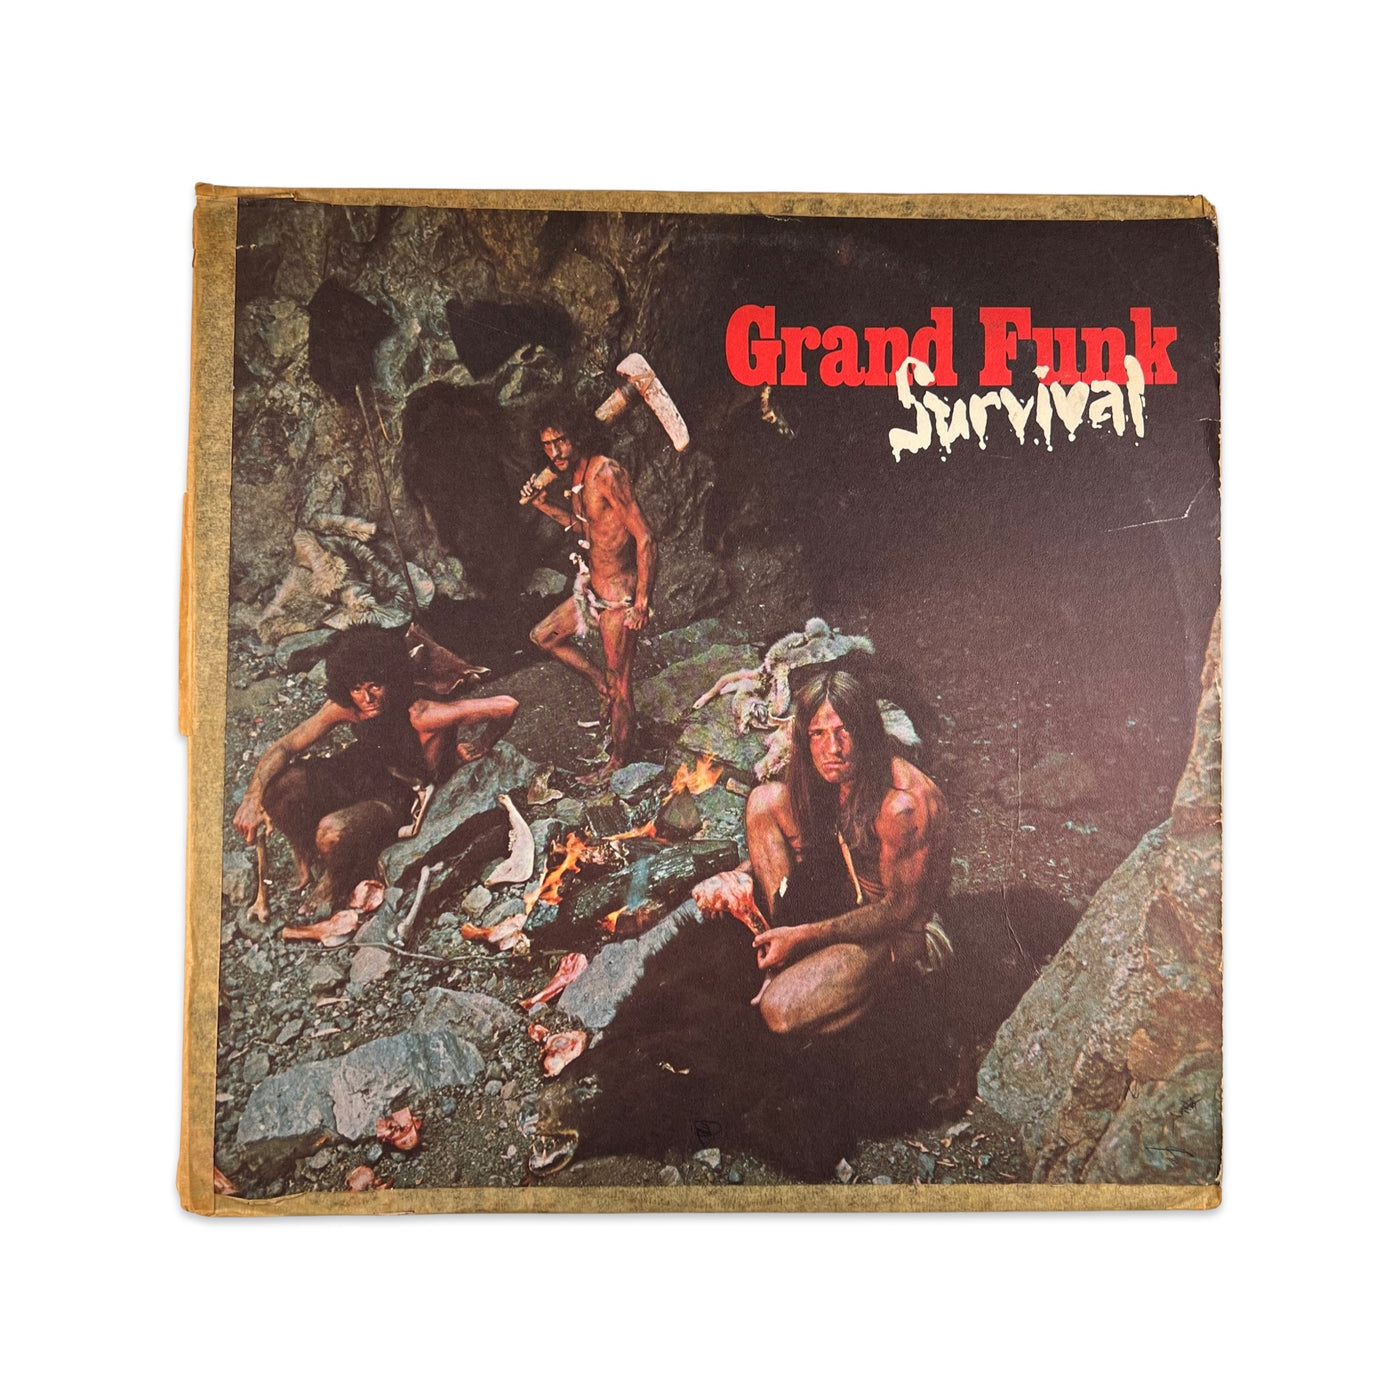 Grand Funk Railroad – Survival